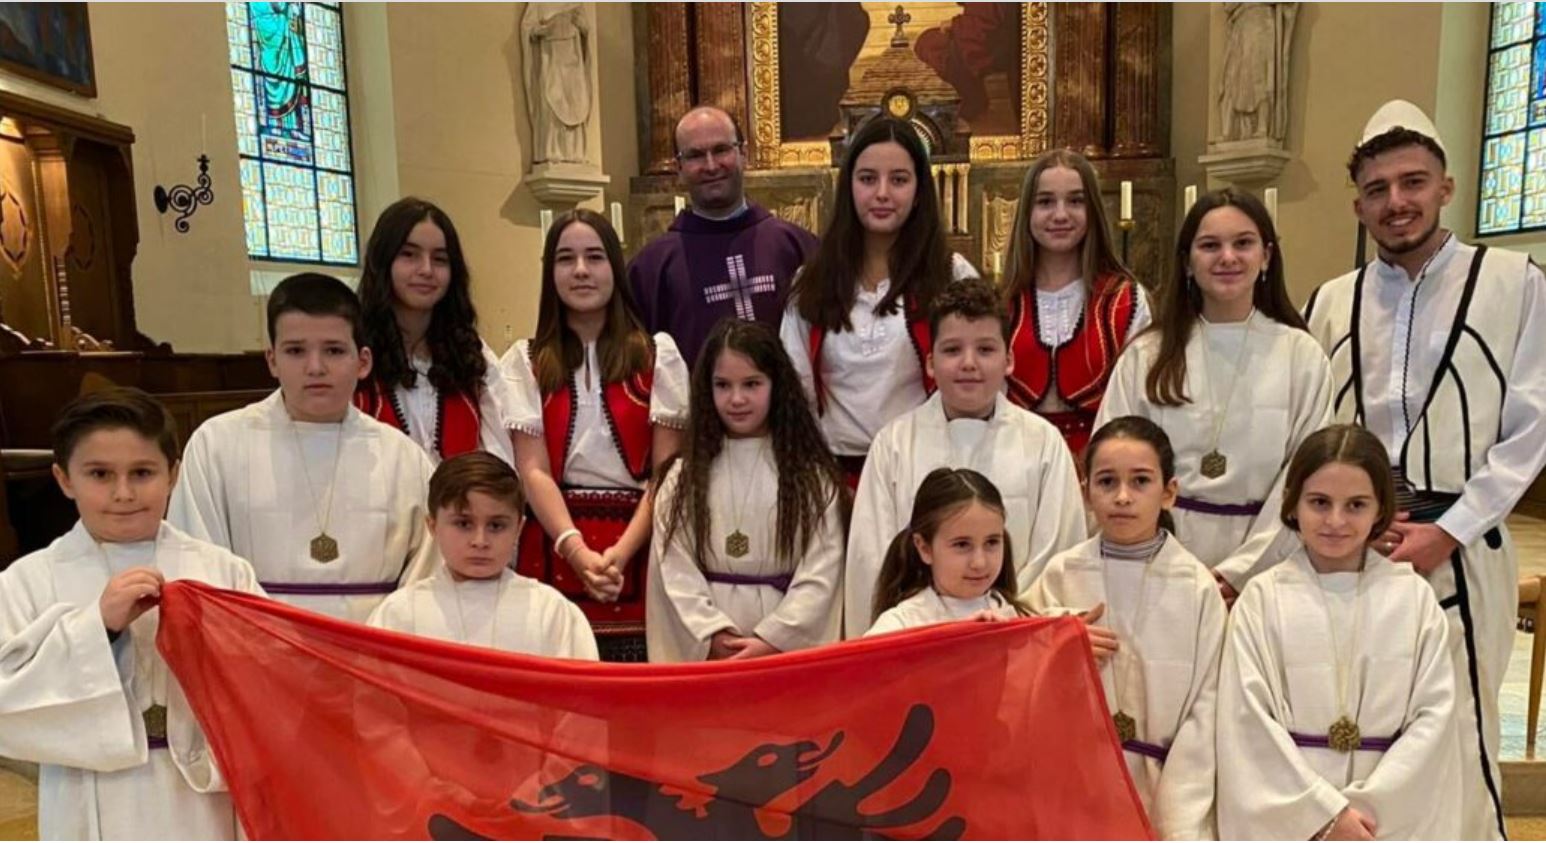 Misioni katolik Shqiptar në Zvicër shënon 30 vjetorin e themelimit